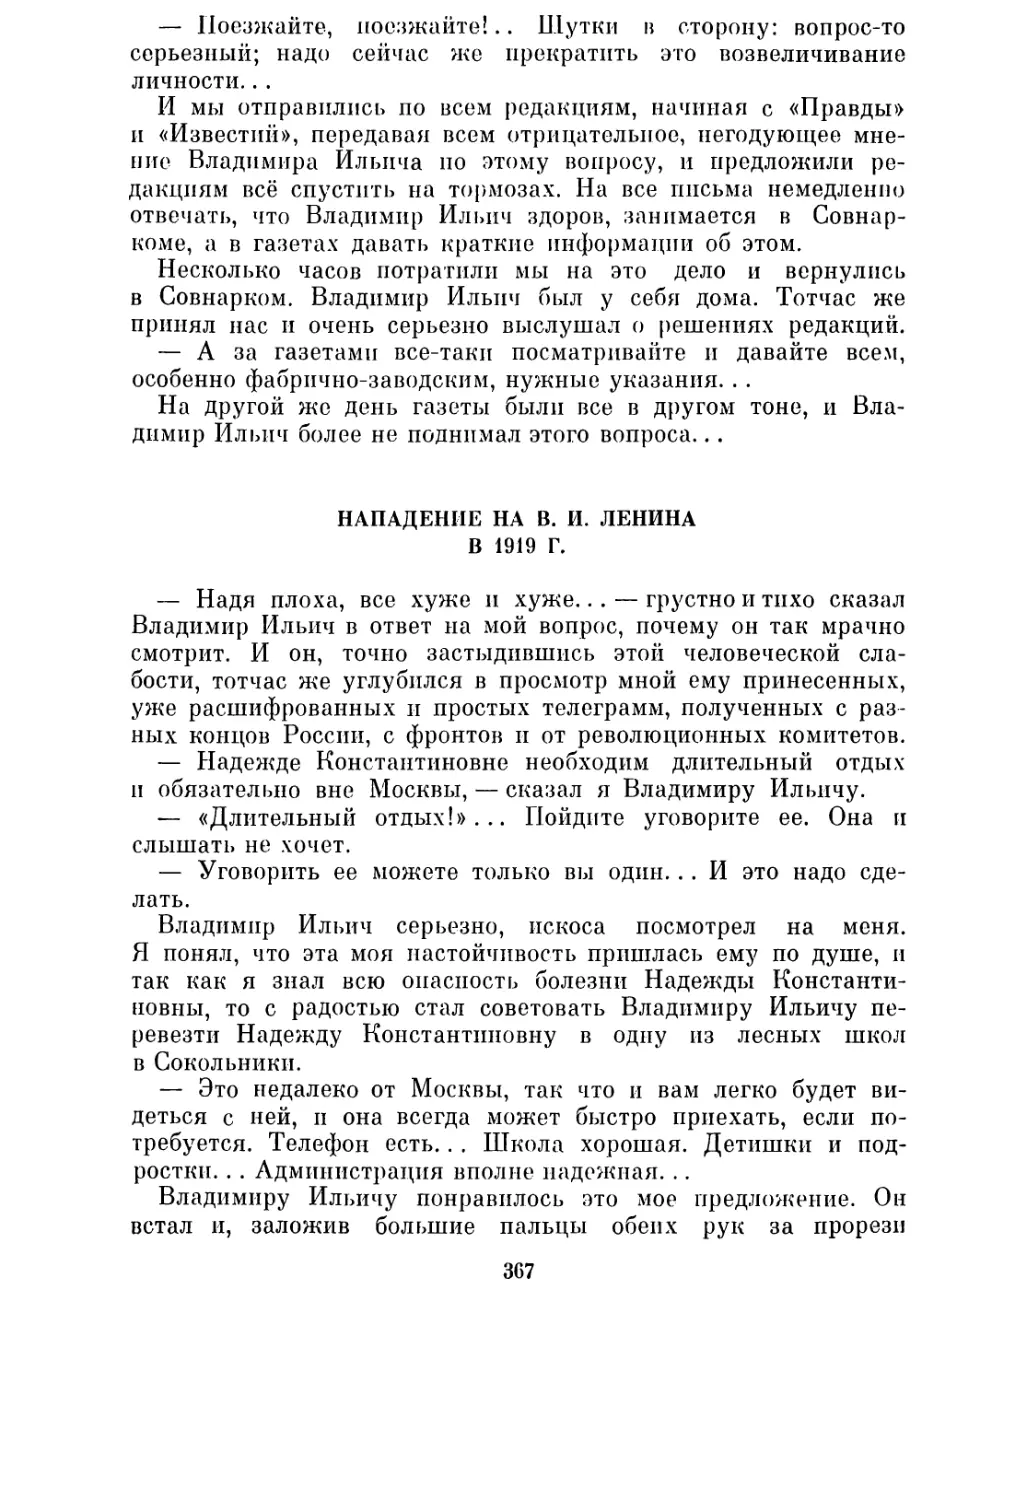 Нападение на В. И. Ленина в 1919 г.